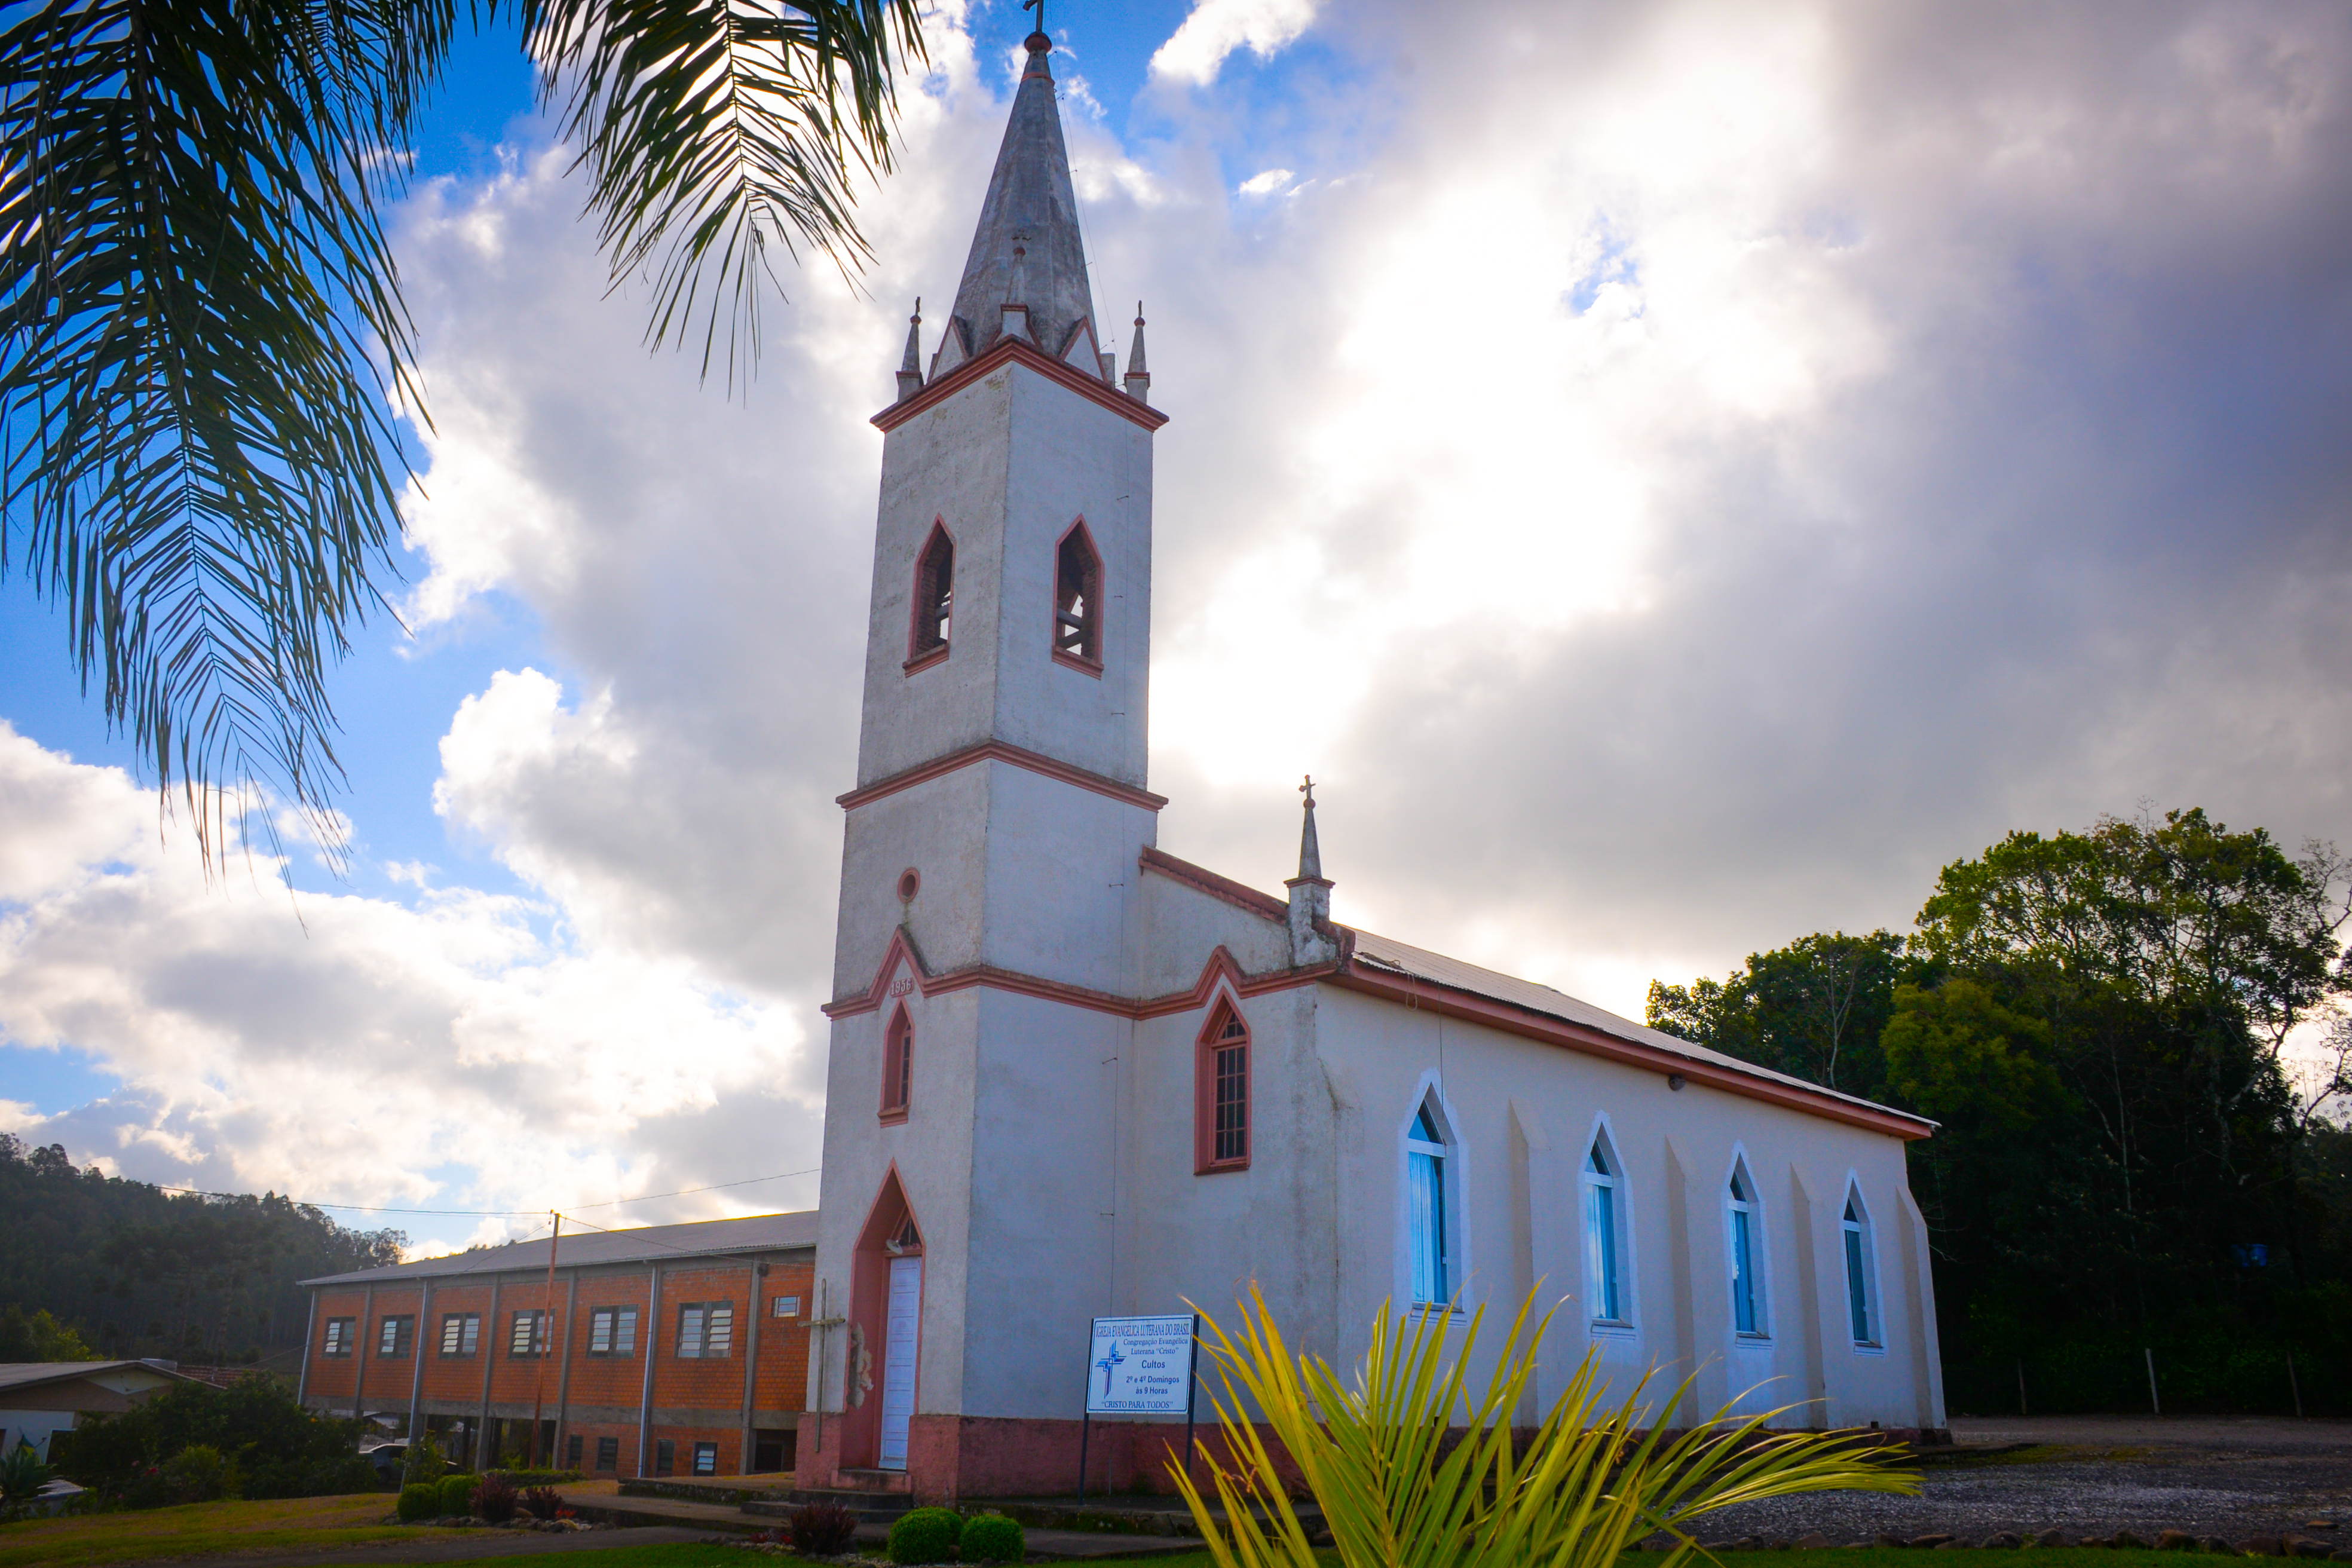 Igreja Evangélica Luterana do Brasil